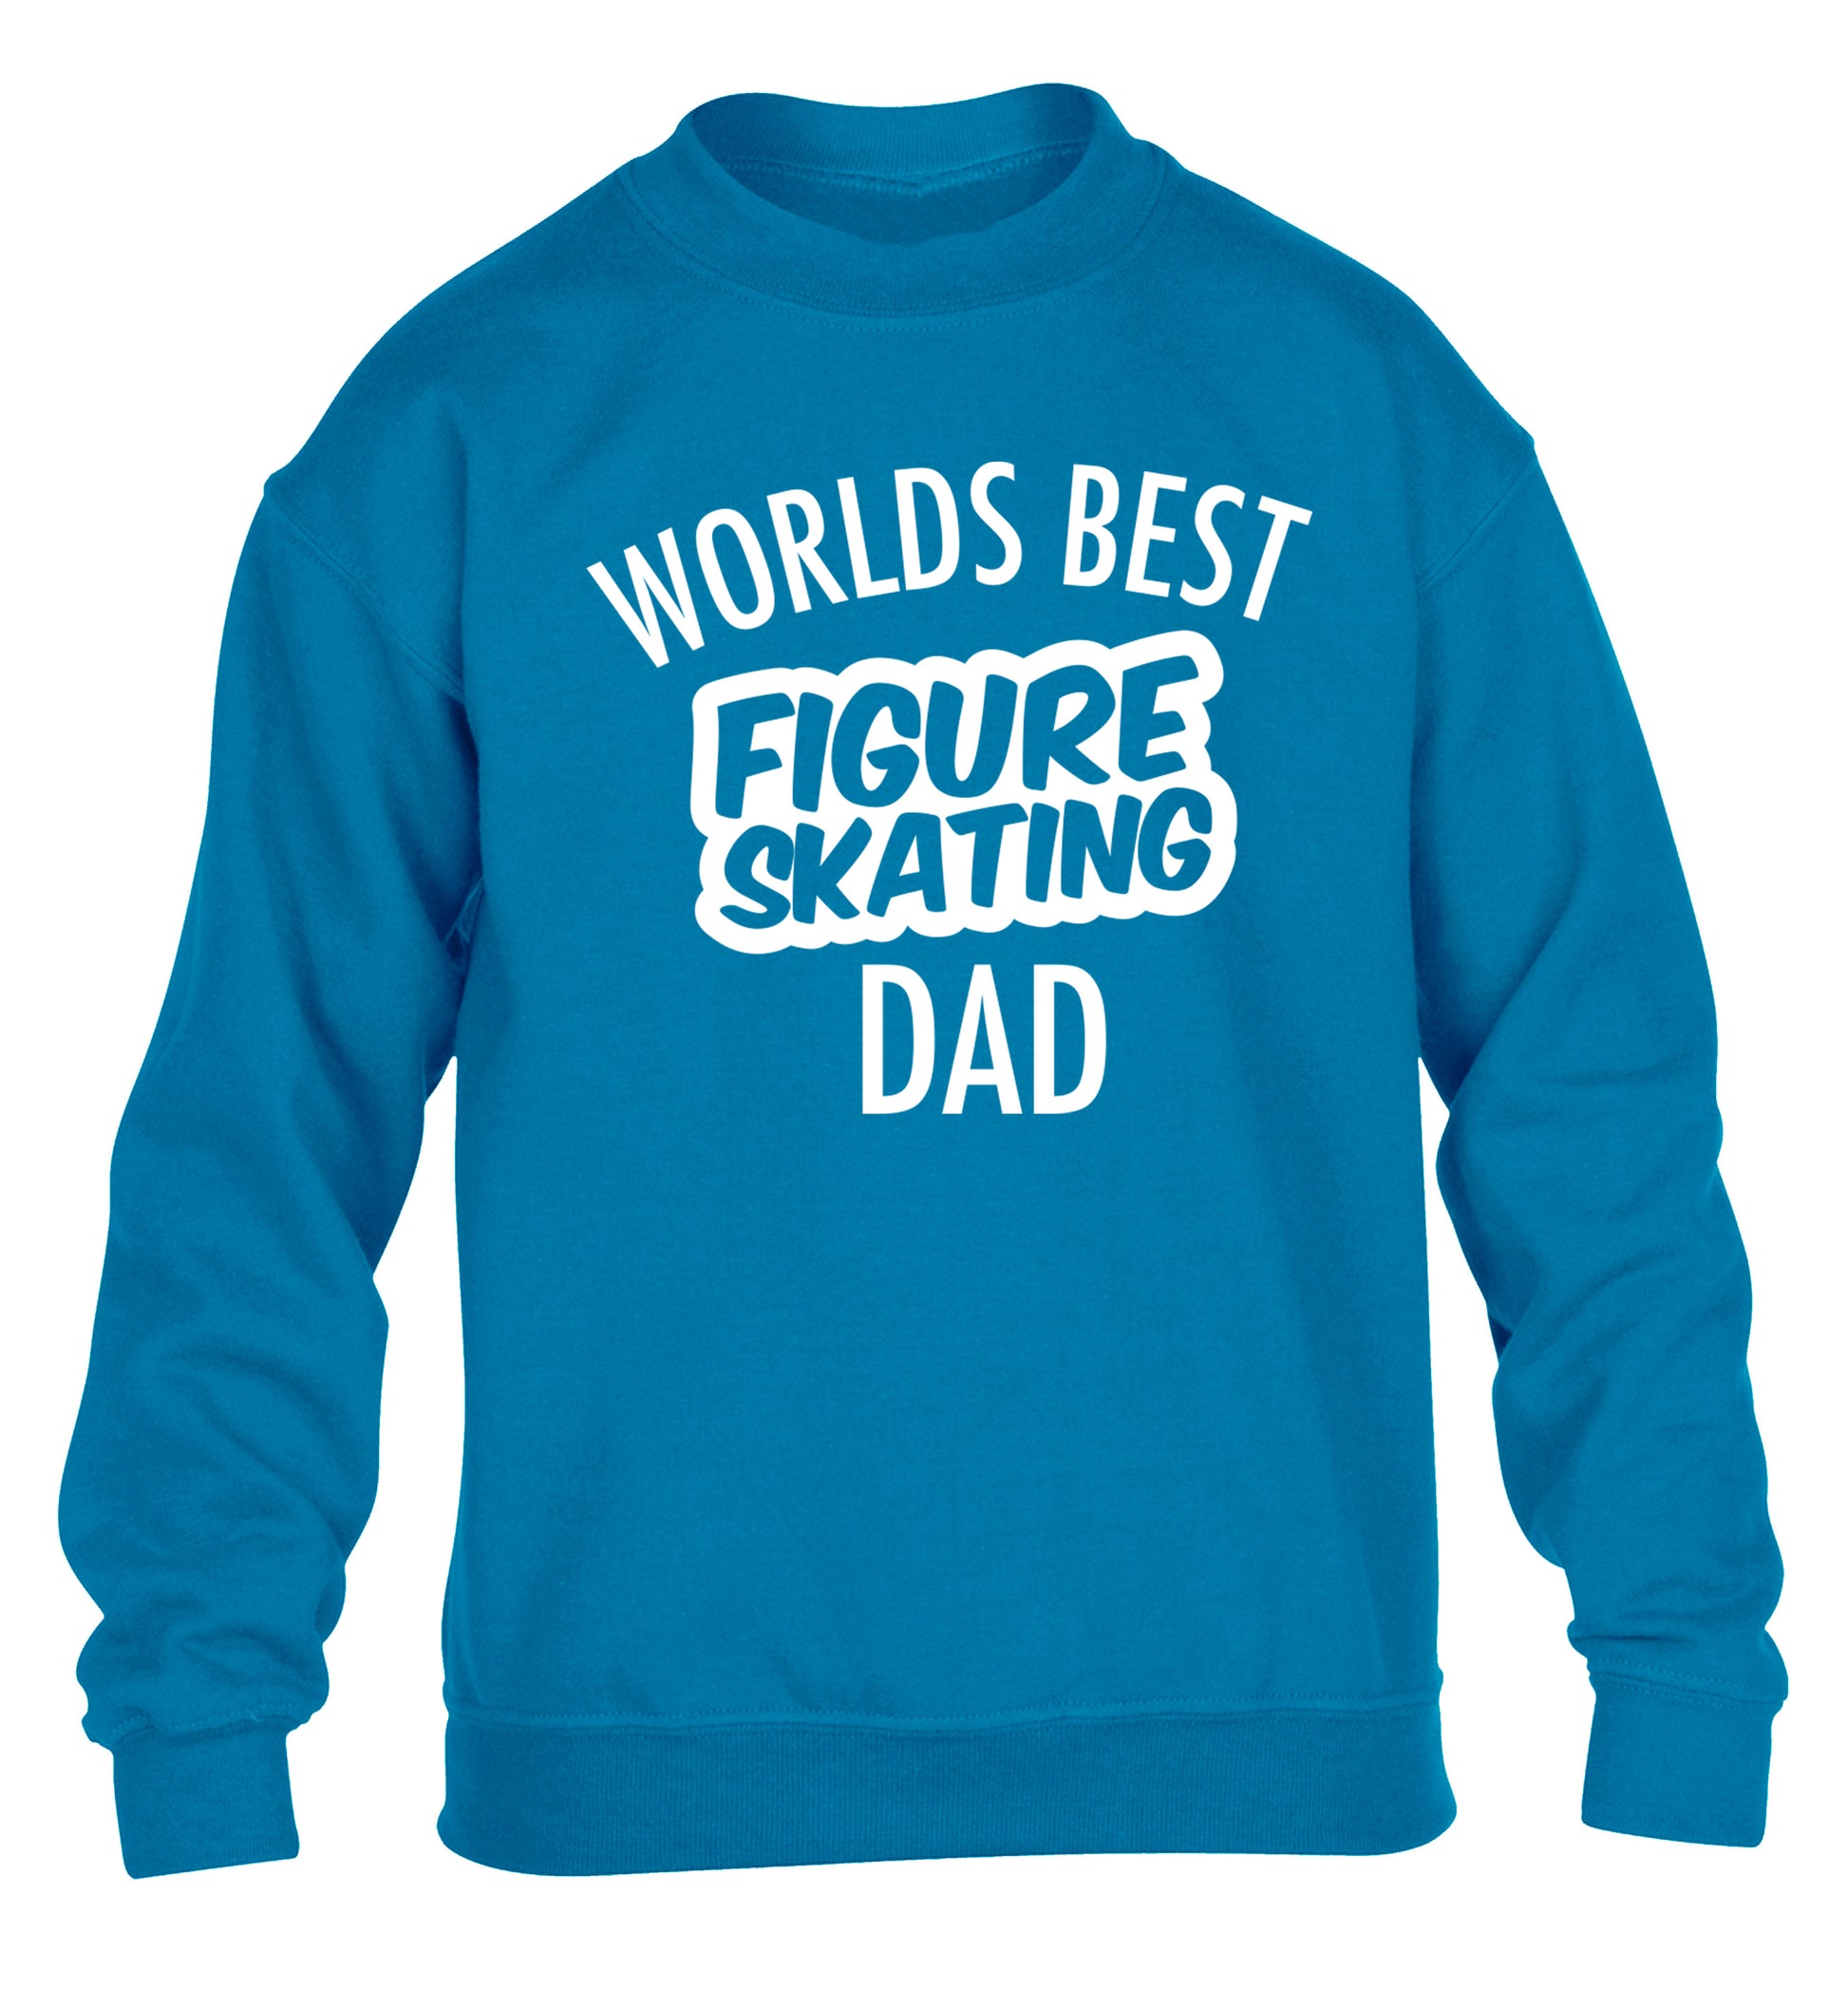 Worlds best figure skating dad children's blue sweater 12-14 Years